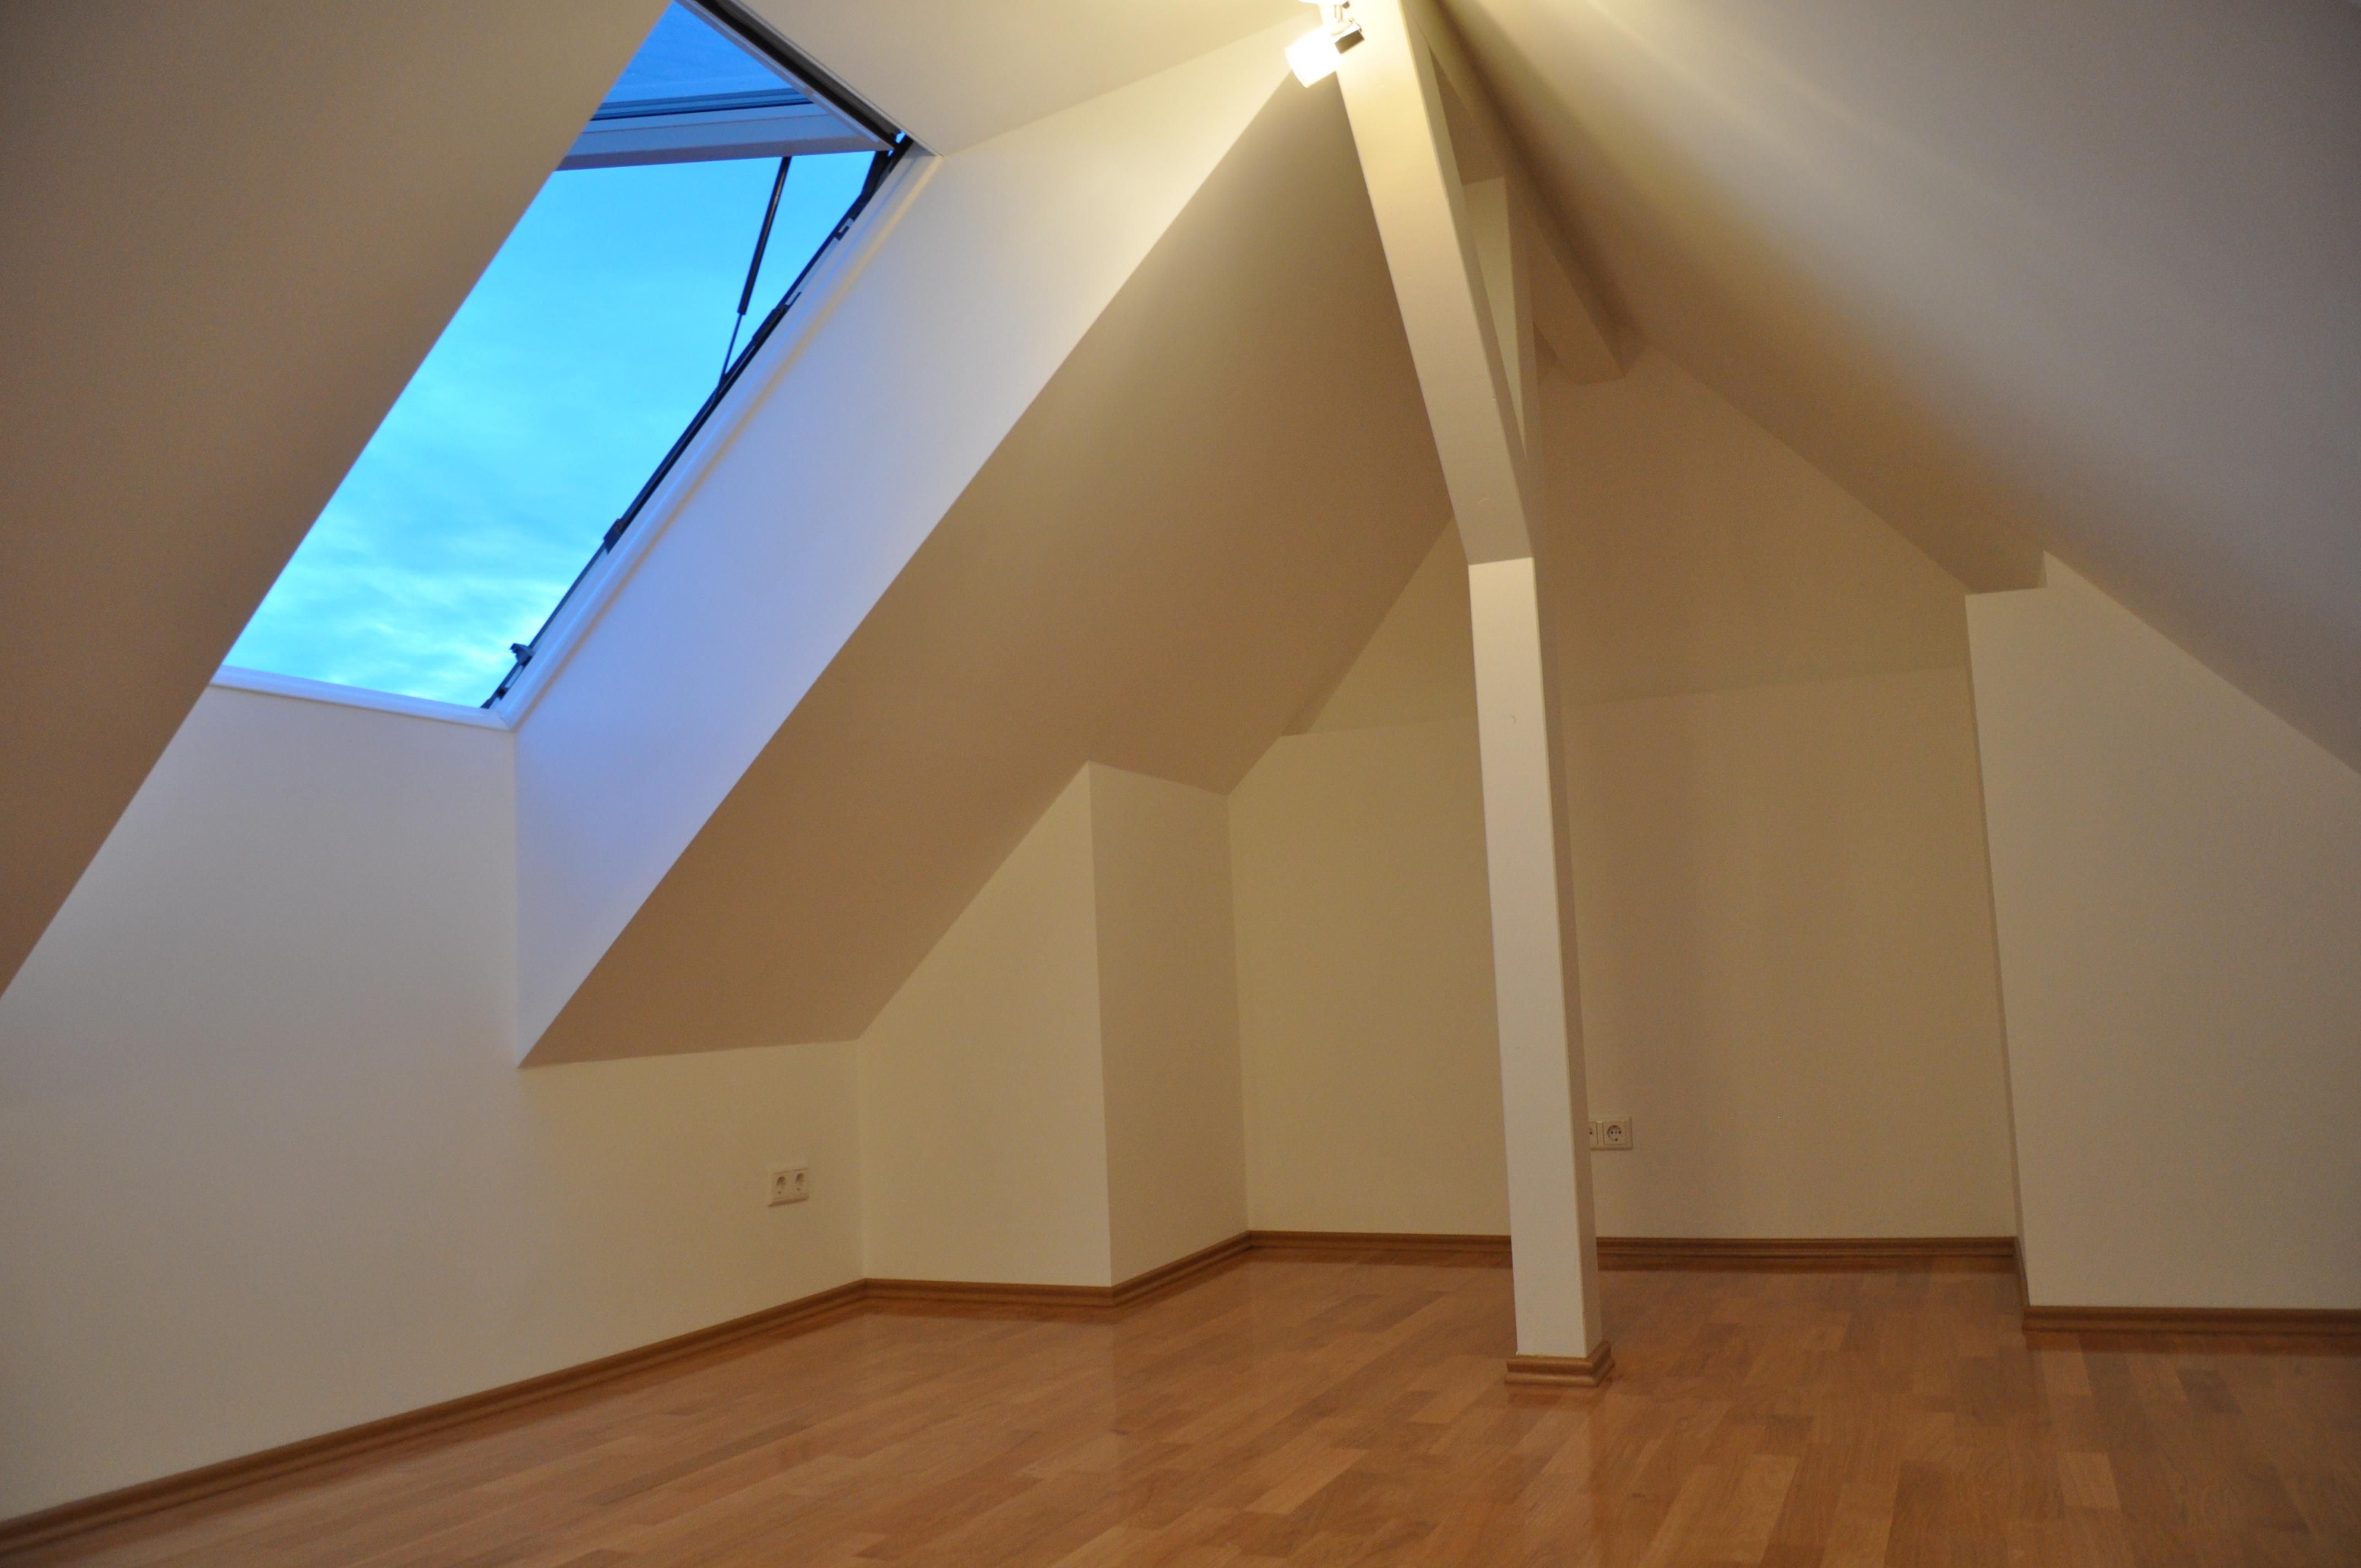 Wohnbereich im Galerie Appartement 70m2 Penthouse zu mieten #dachausbau #kamin #wohnzimmer #loft #galerie ©Tatjana Adelt